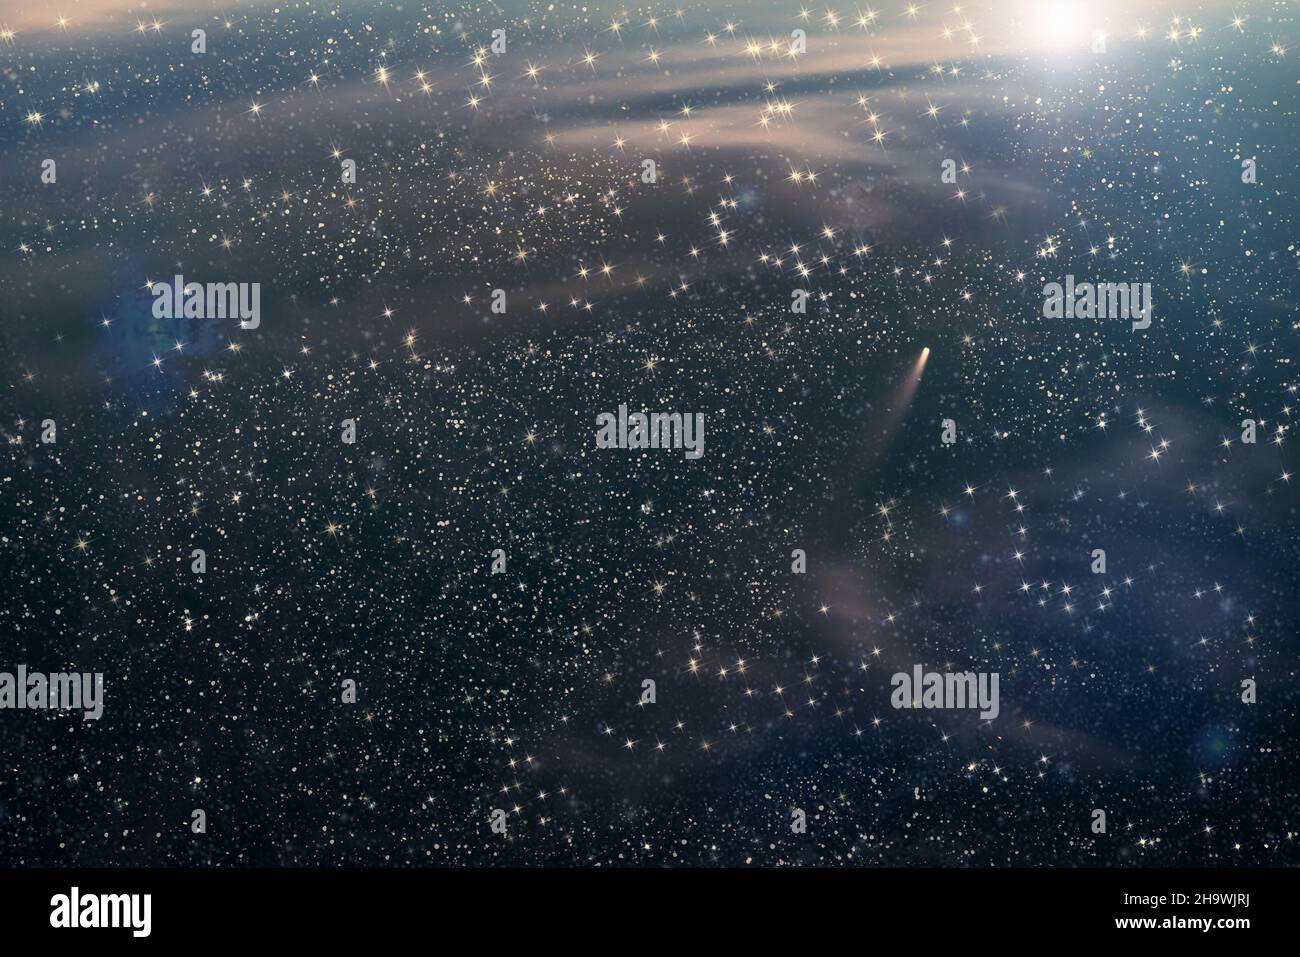 Abstrakter Weltraumhintergrund mit Sternen, Nebel und Kometen, die im tiefen Raum auf einen Stern zufliegen Stockfoto